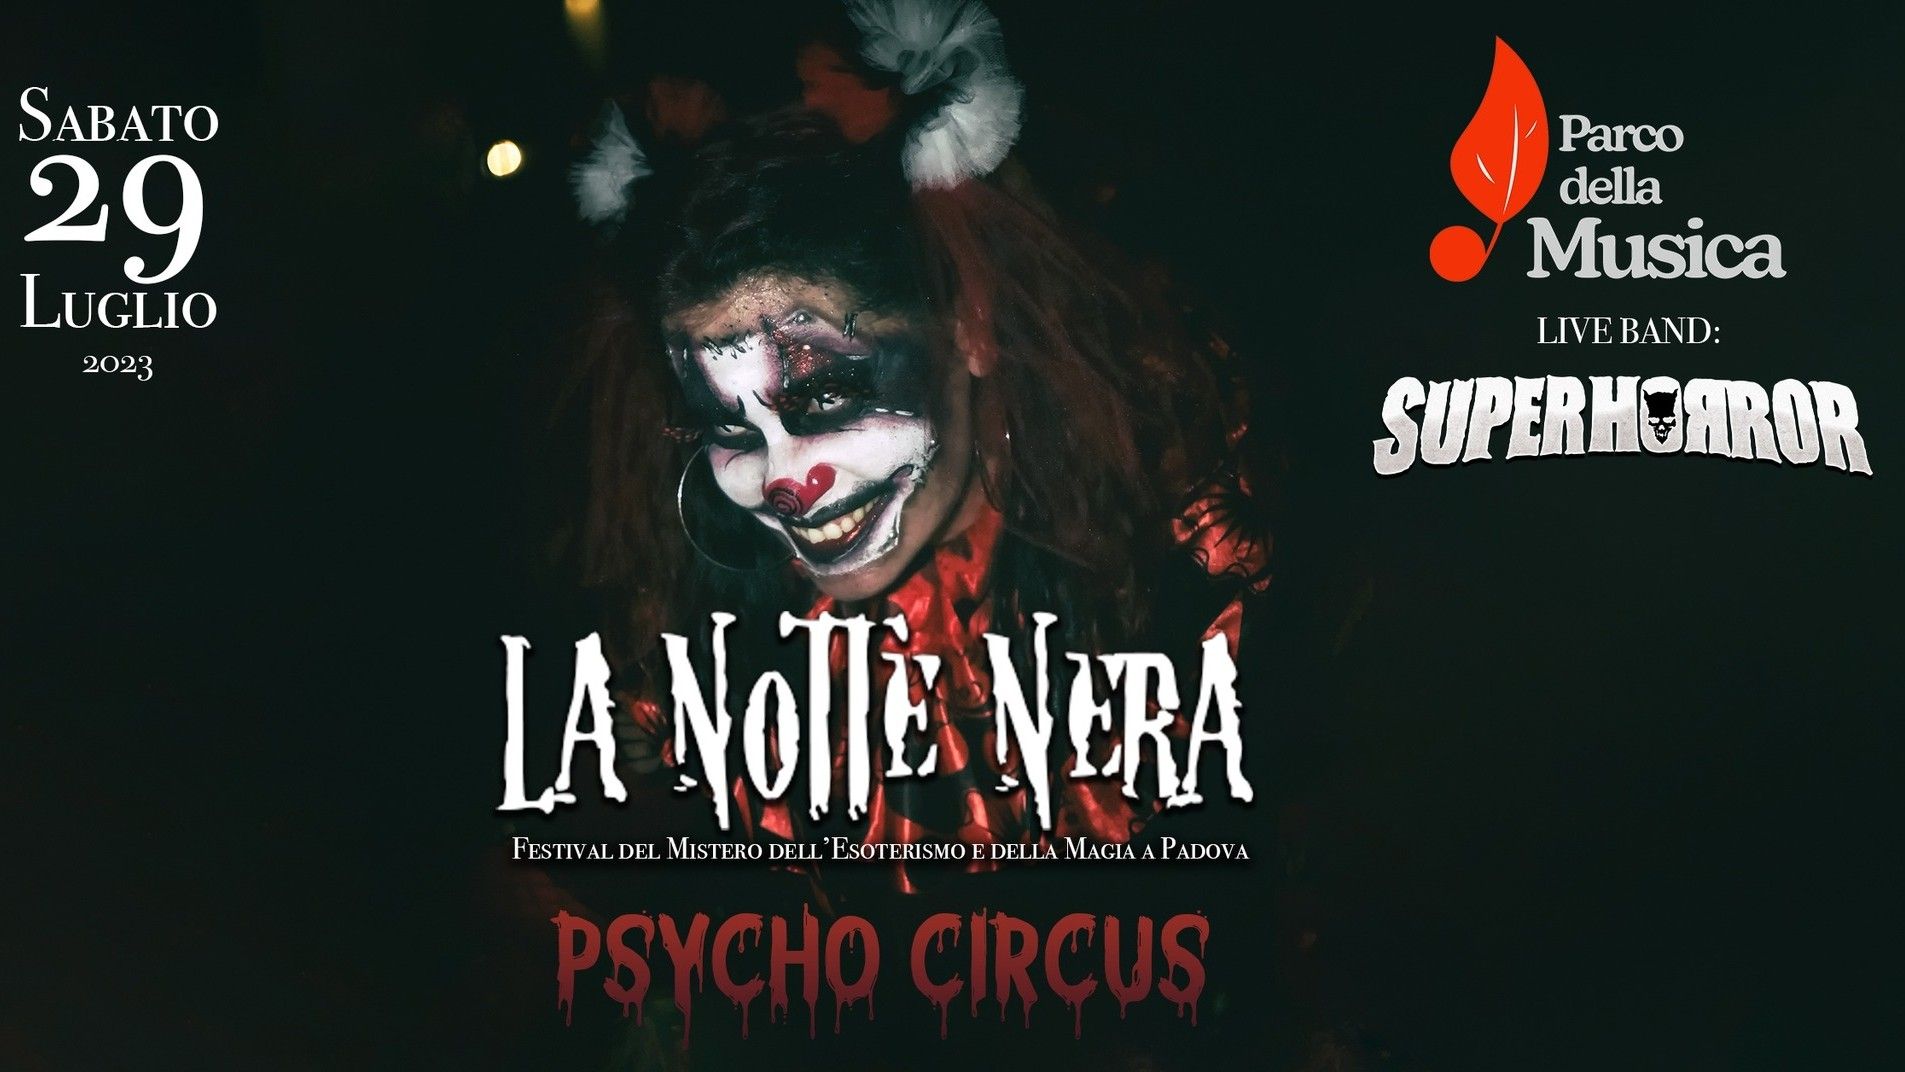 La Notte Nera - Festival del Mistero dell'Esoterismo e della Magia - Psycho Circus